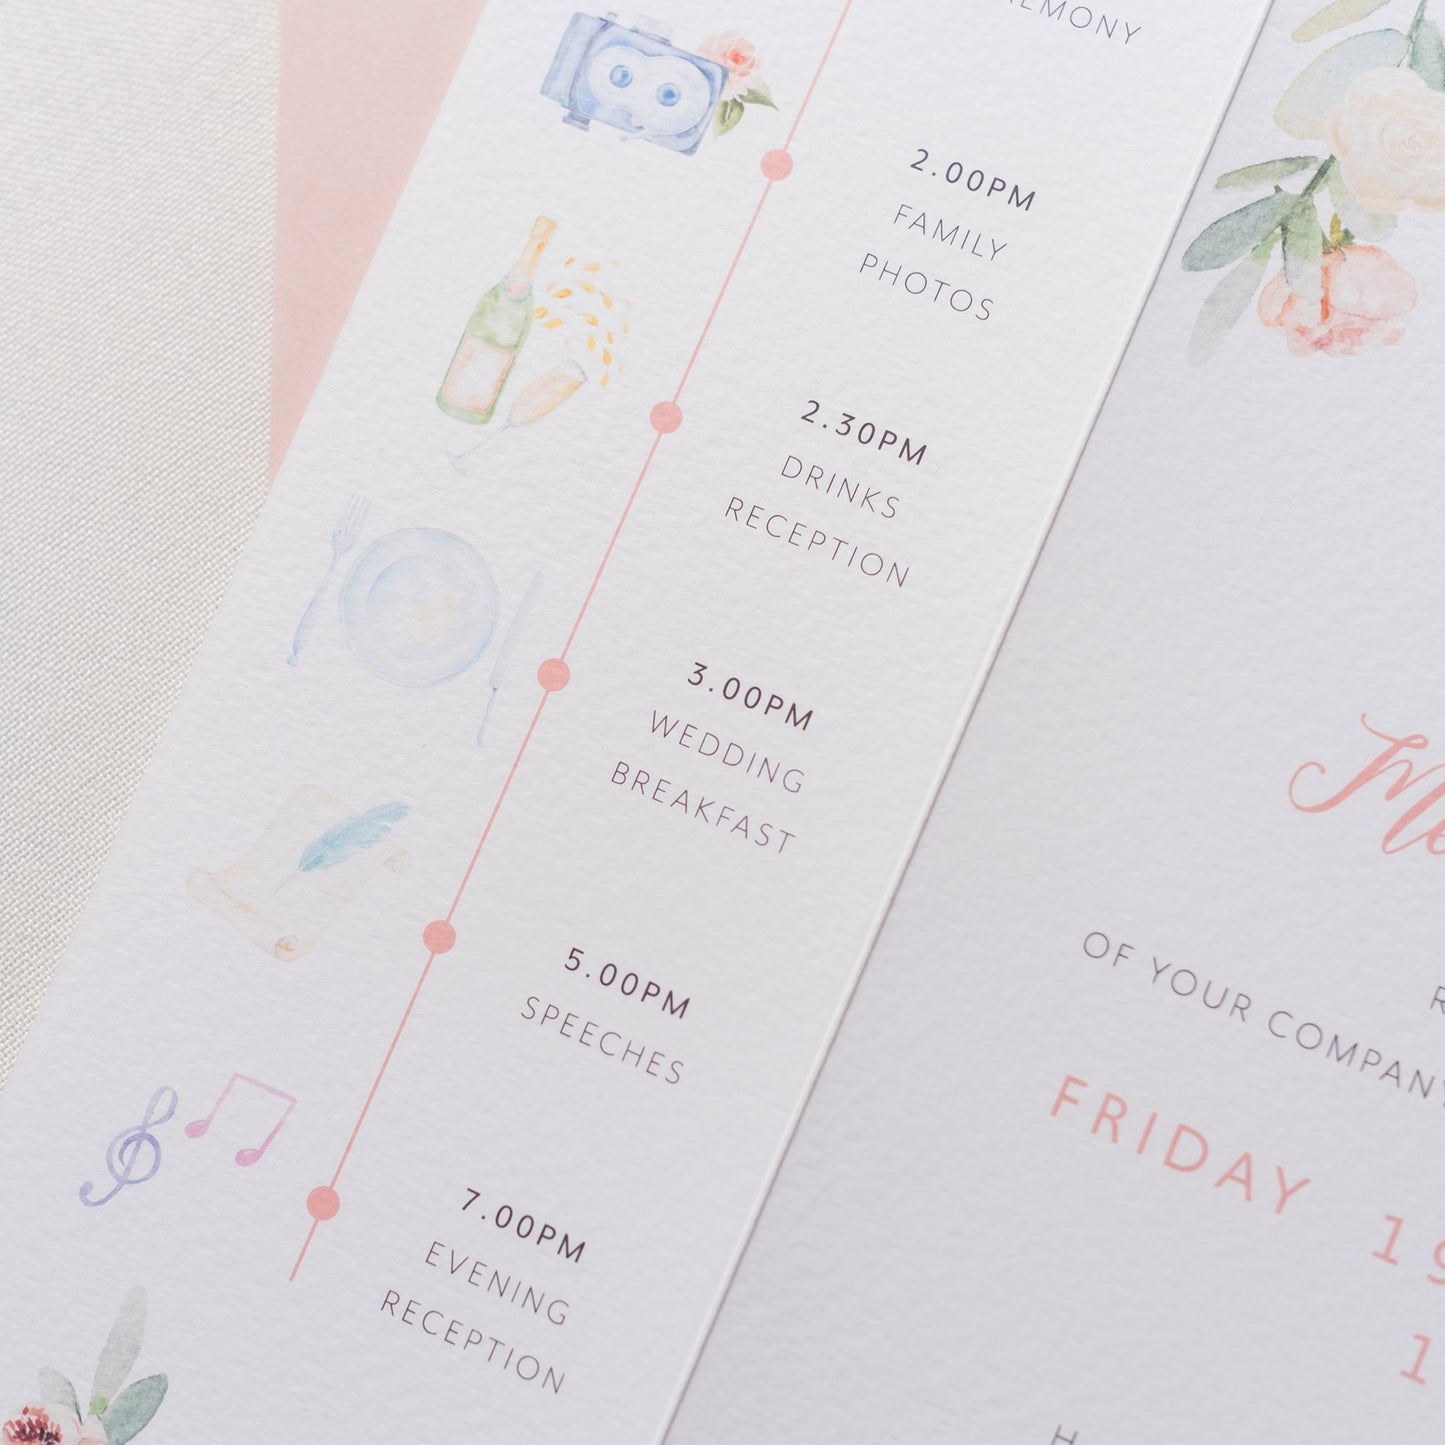 Rose and Eucalyptus folded wedding invitation details